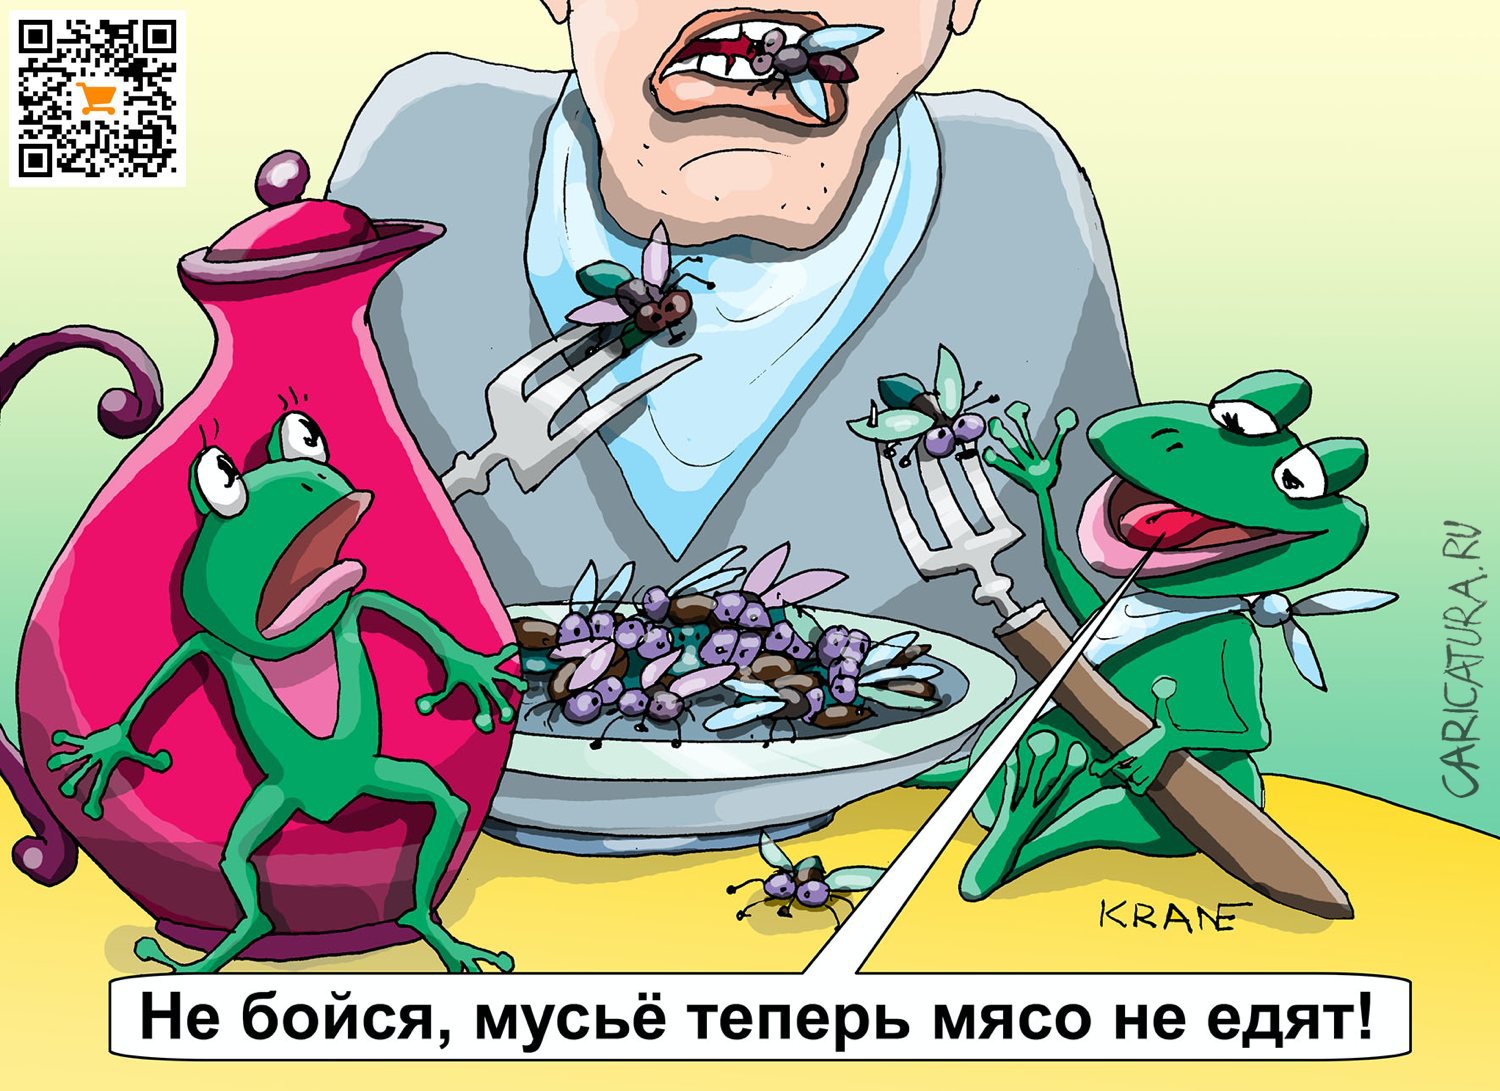 Карикатура "Больше бальзама на душу населения", Евгений Кран